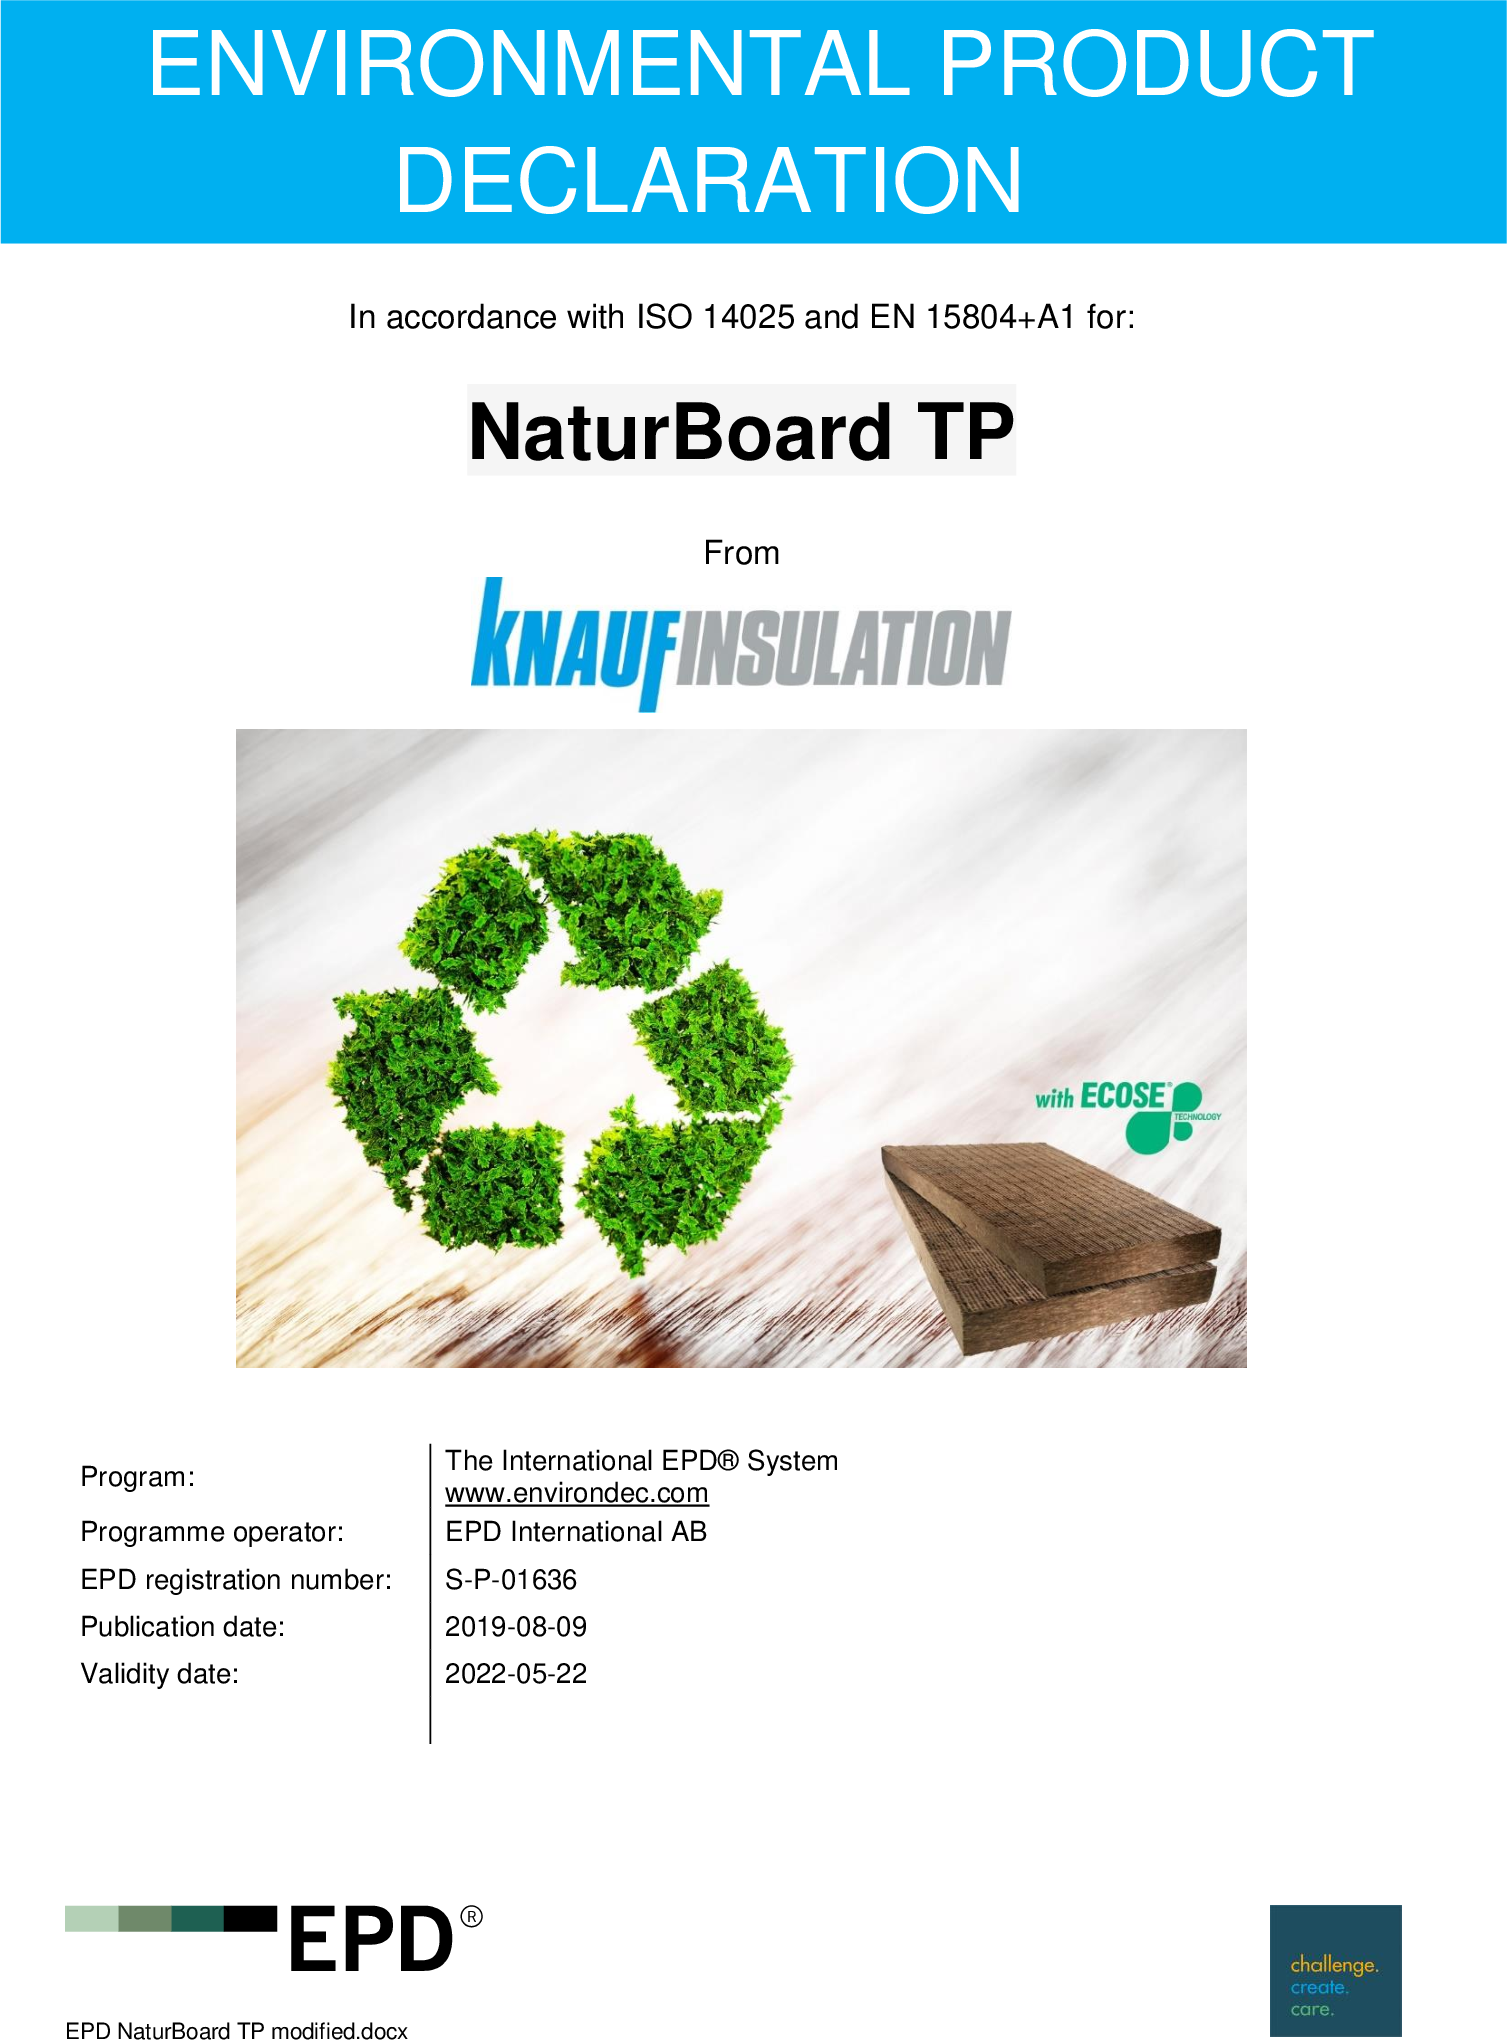 NaturBoard TP